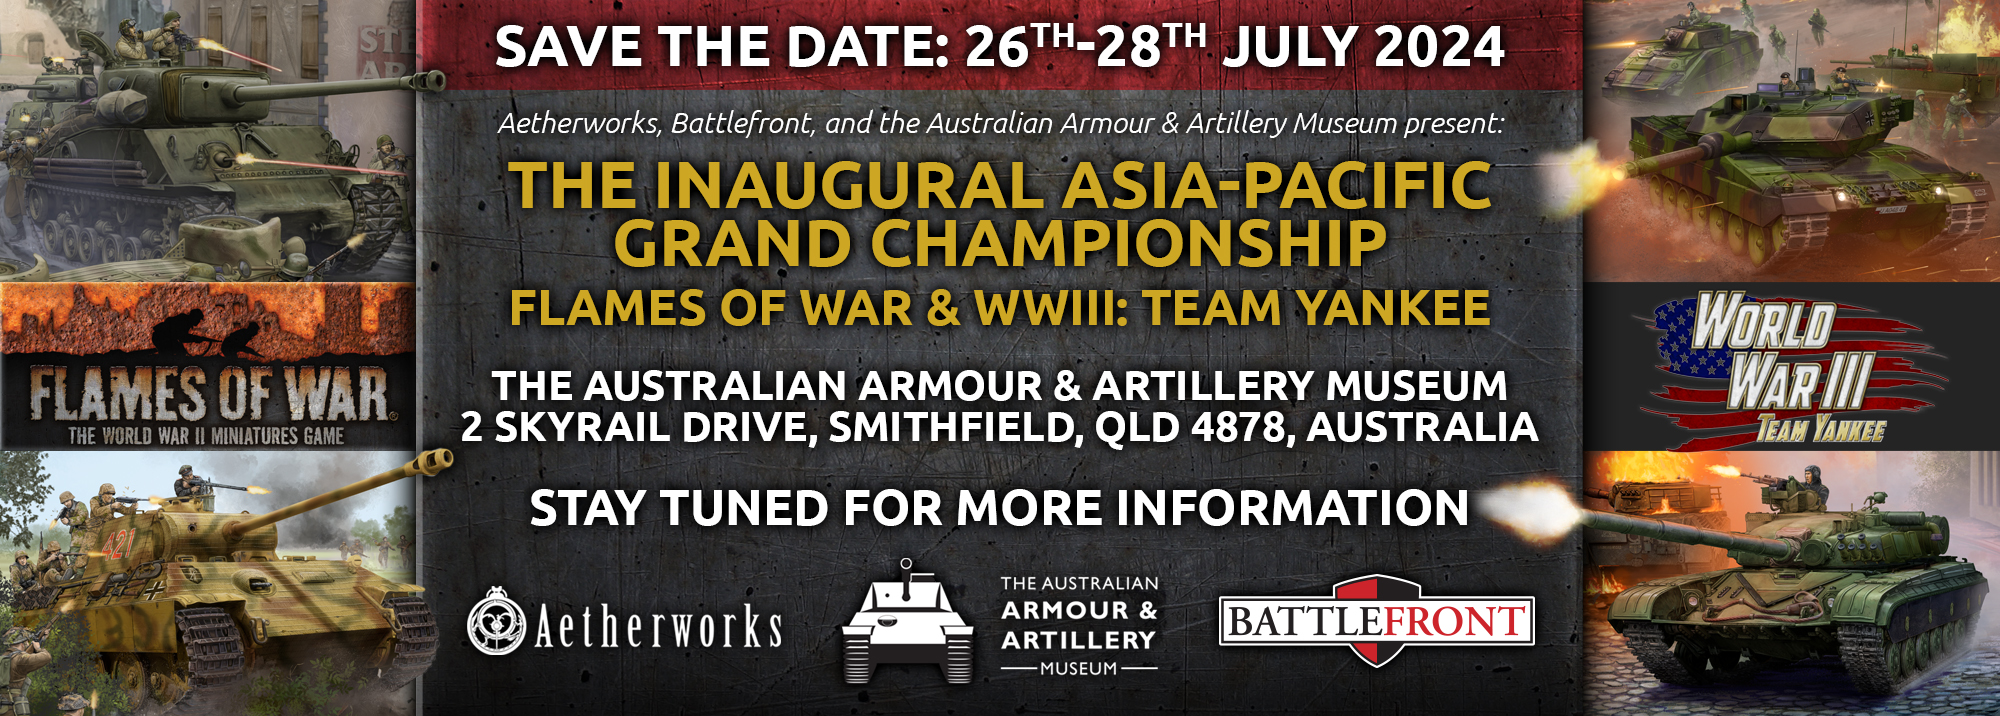 Asia-Pacific Grand Championship 2024